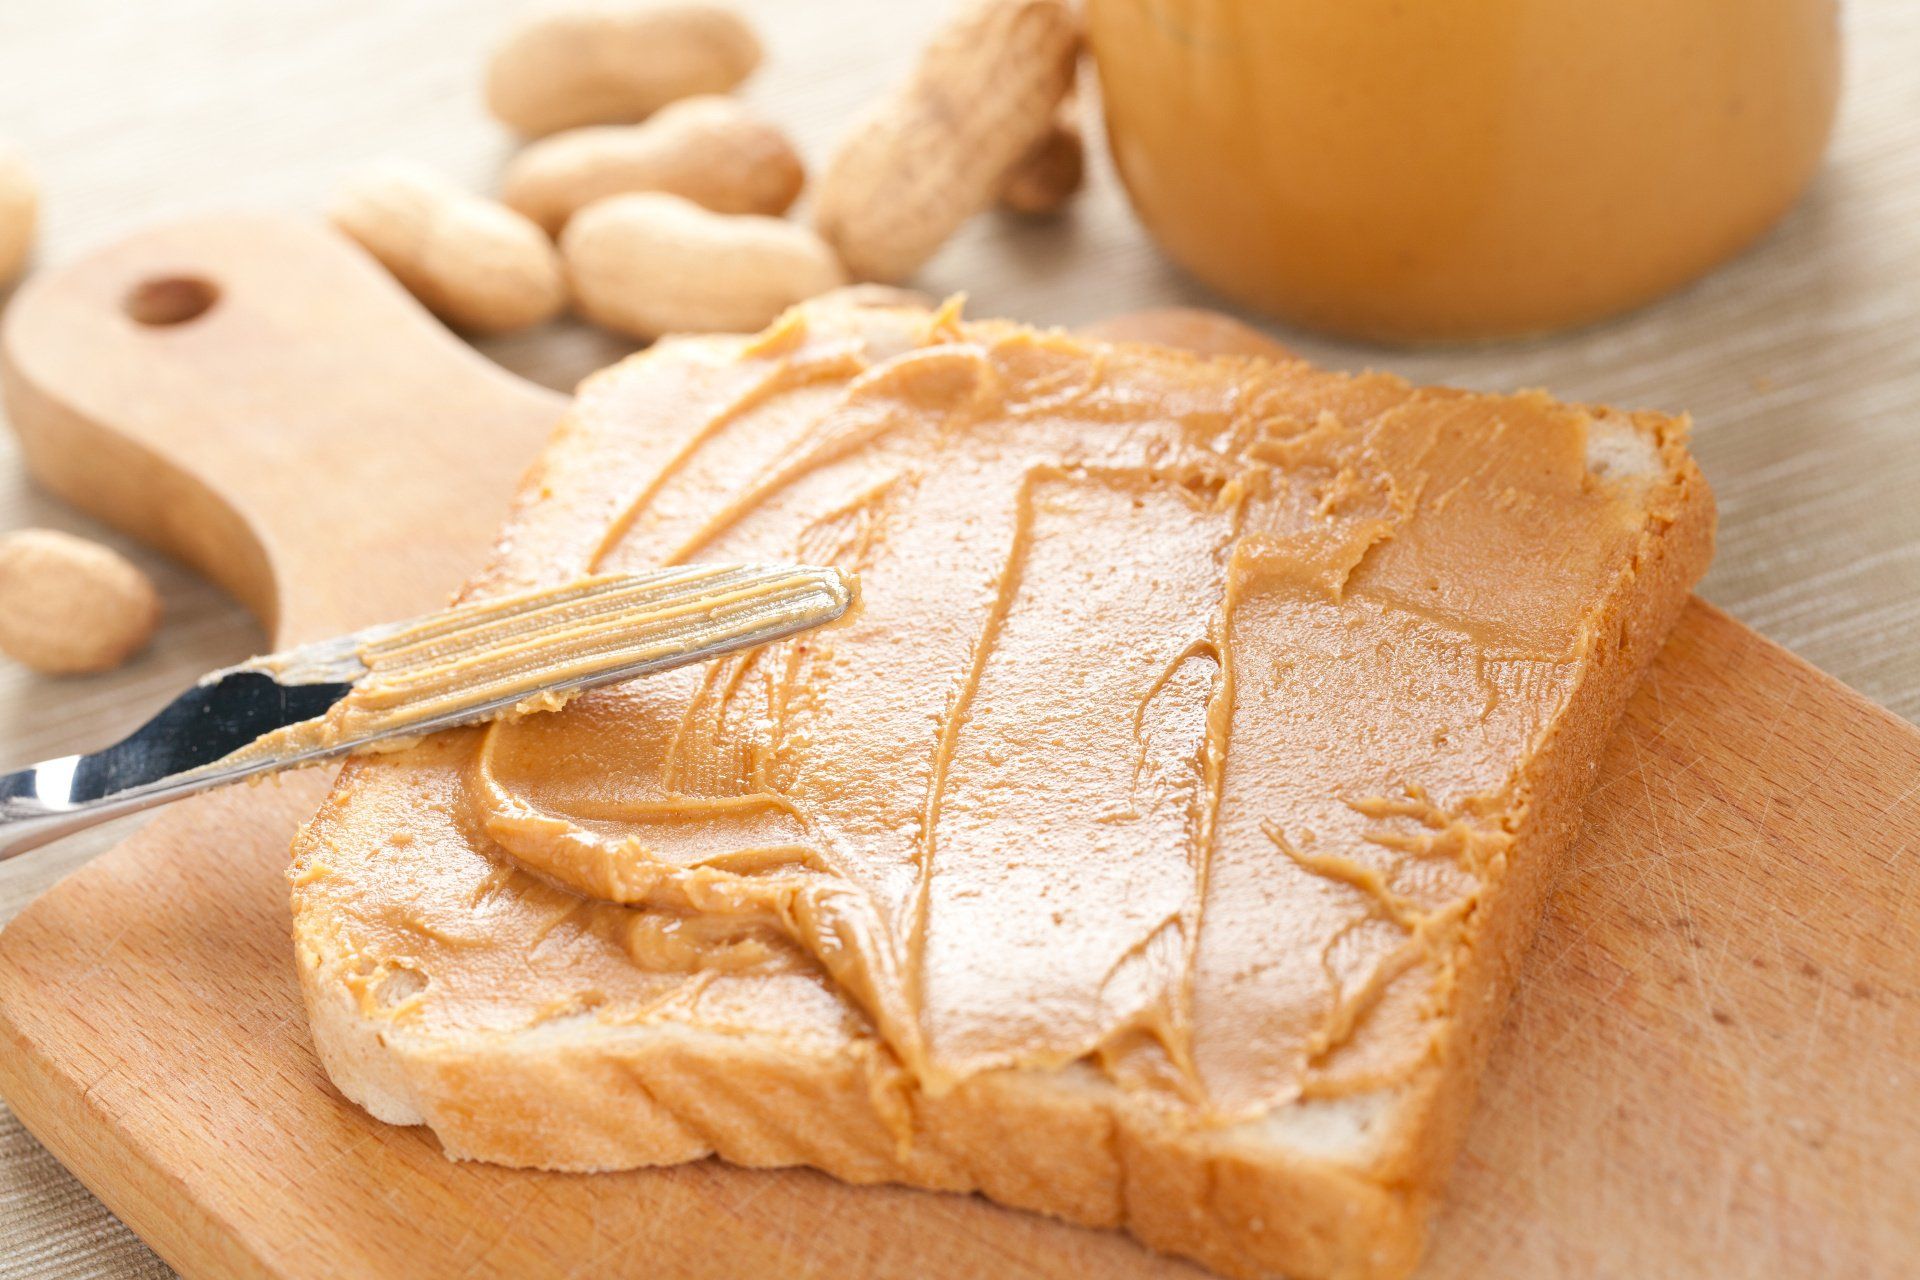 Peanut butter spread on bread.